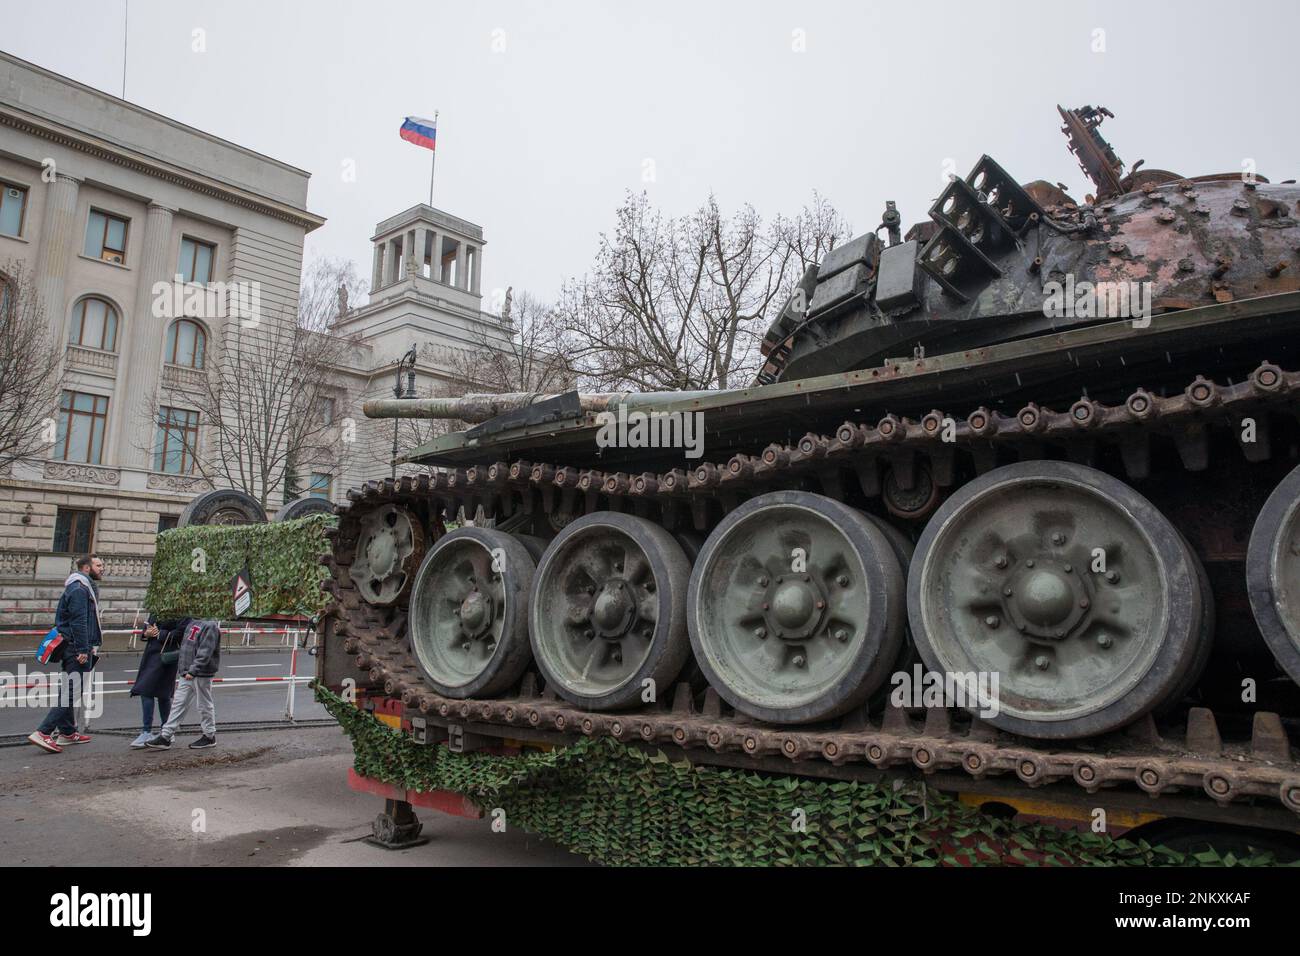 Berlin, Allemagne. 24th févr. 2023. Un char russe T-72 détruit de la bataille de Kiev a été placé à l'extérieur de l'ambassade de Russie à Berlin comme un mémorial contre la guerre, marquant ainsi l'anniversaire de l'invasion russe de l'Ukraine. Le char apporté à Berlin depuis un musée militaire de Kiev restera exposé pendant quelques jours. Les organisateurs de l'initiative ont déclaré que le char sert de rappel aux atrocités commises par l'armée russe et ''pour remettre leur malbouffe devant leur porte.'' Toutefois, l'installation a fait l'objet d'un long différend et a exigé une ordonnance du tribunal. (CRED Banque D'Images